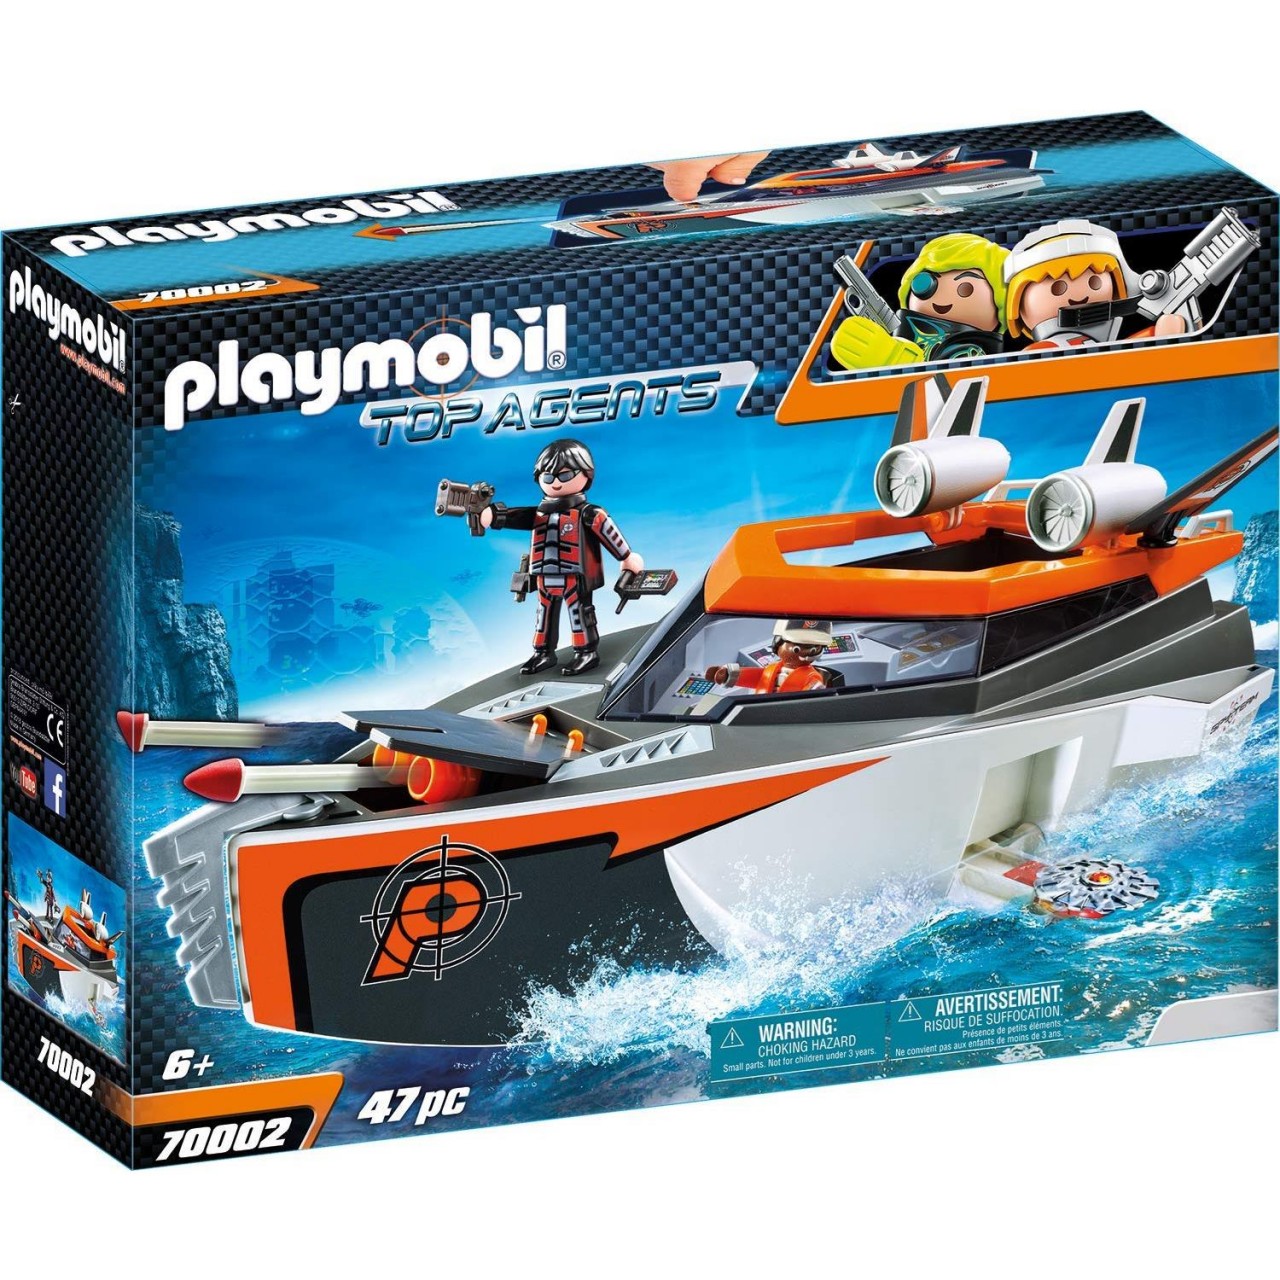 Playmobil 70002 SPY TEAM Turboship